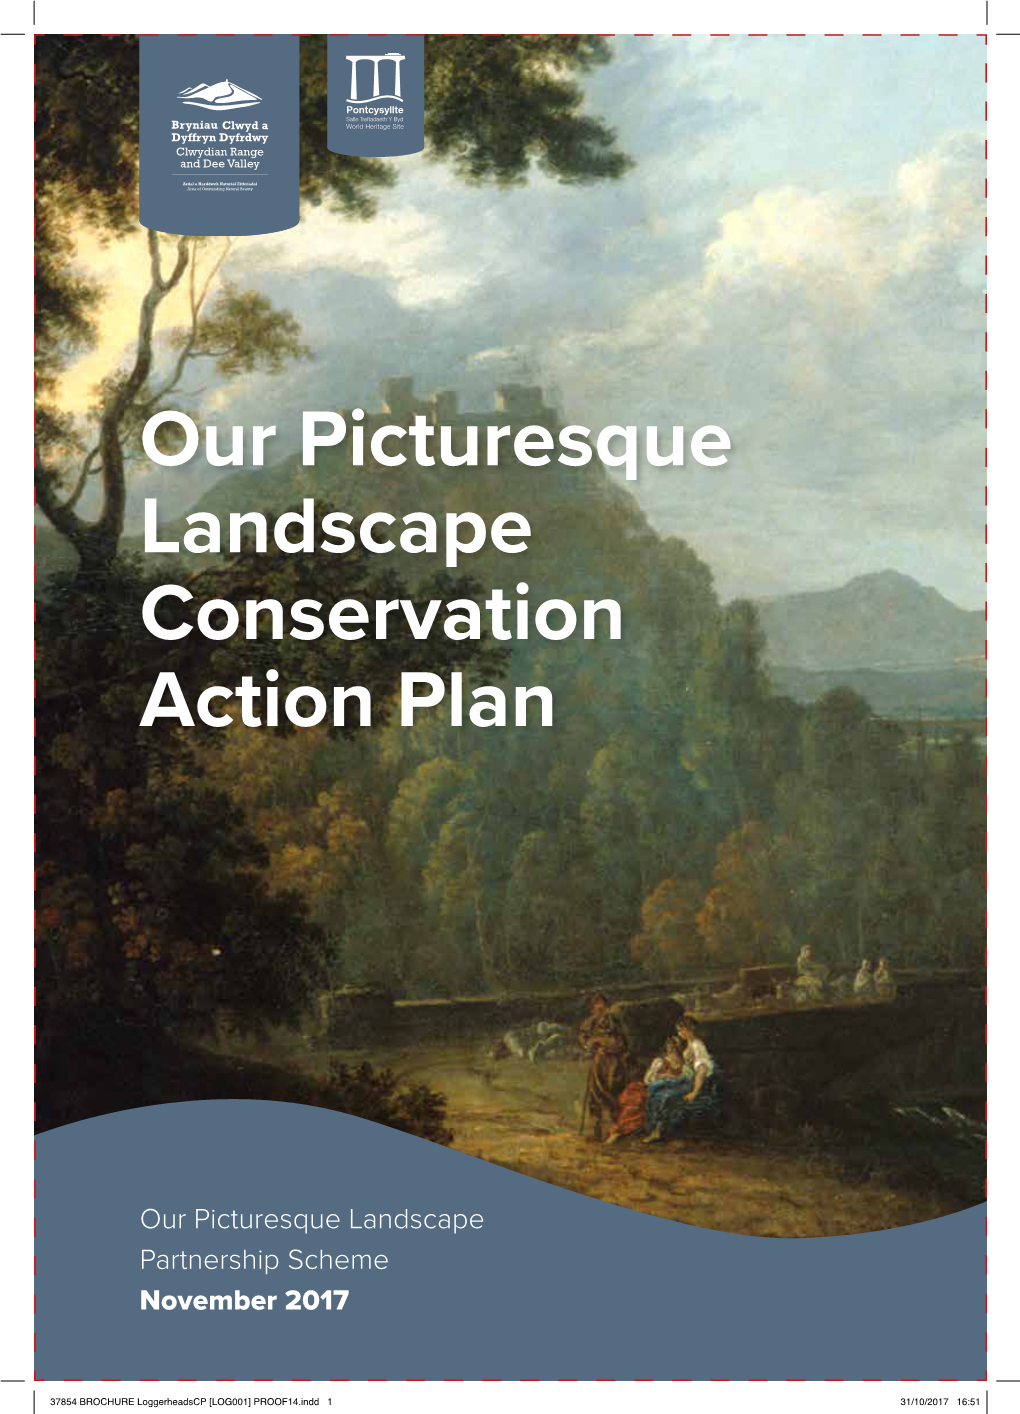 Our Picturesque Landscape Conservation Action Plan